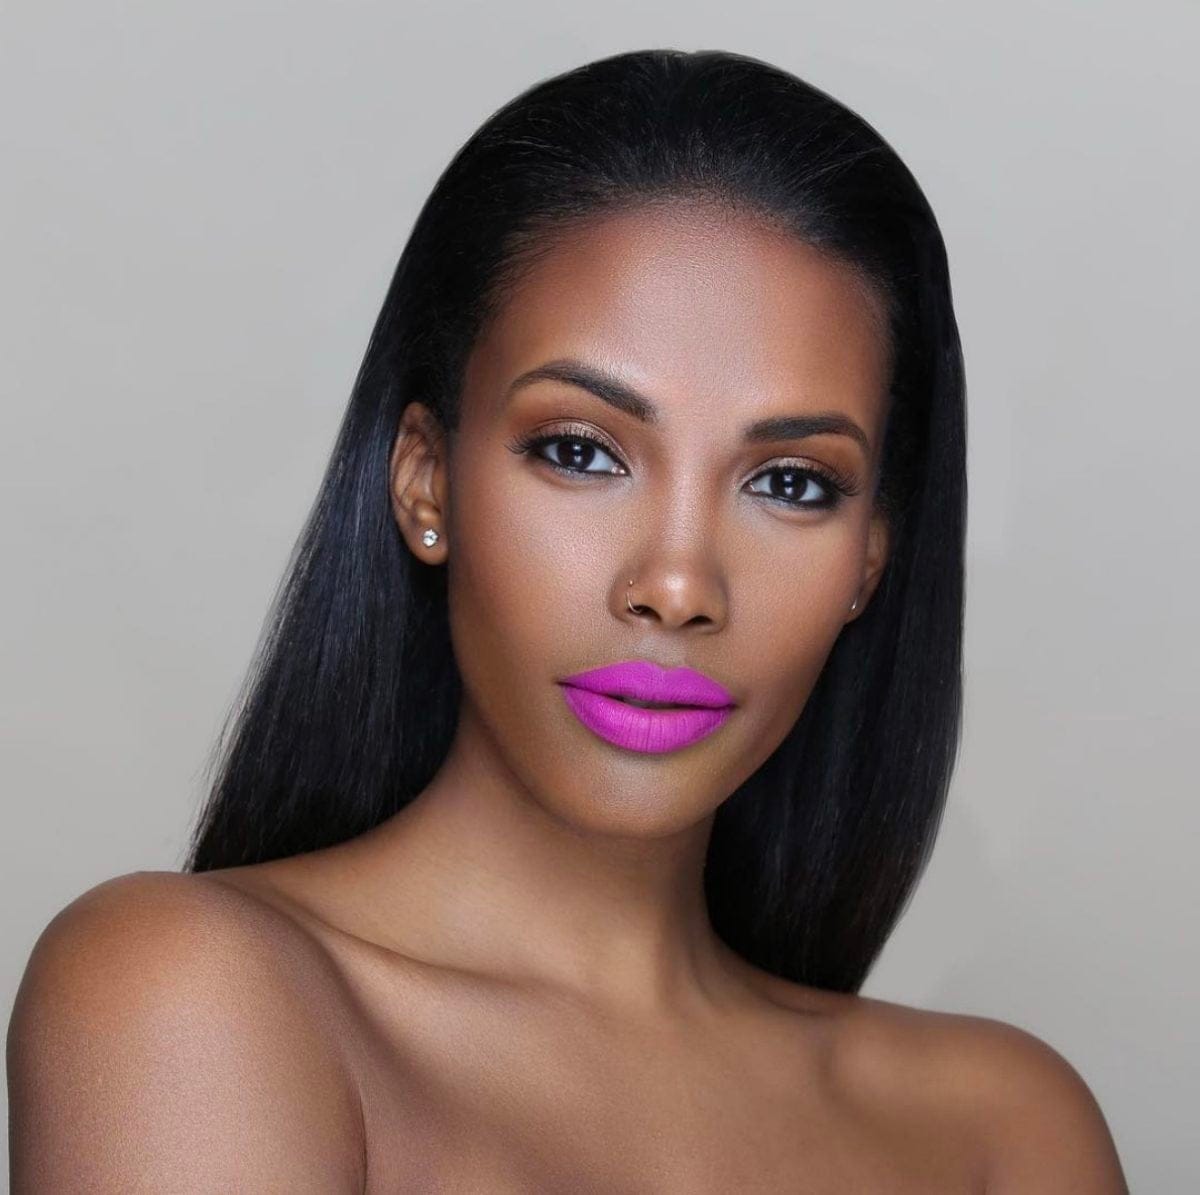 Melissa Butler Has Spent a Decade Empowering Black Women Through Beauty